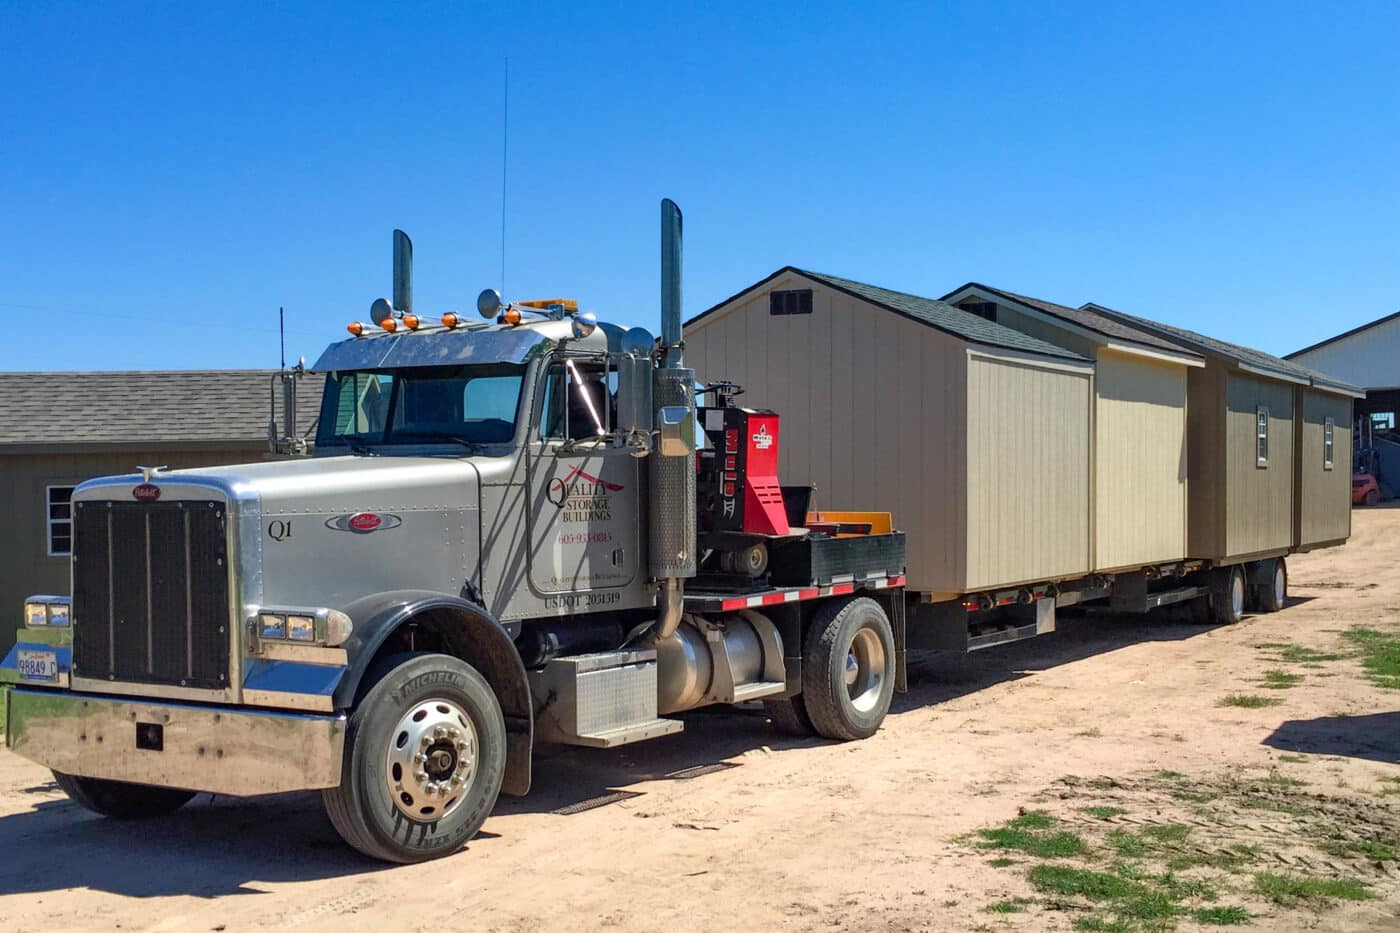 Tractor trailer delivering storage sheds